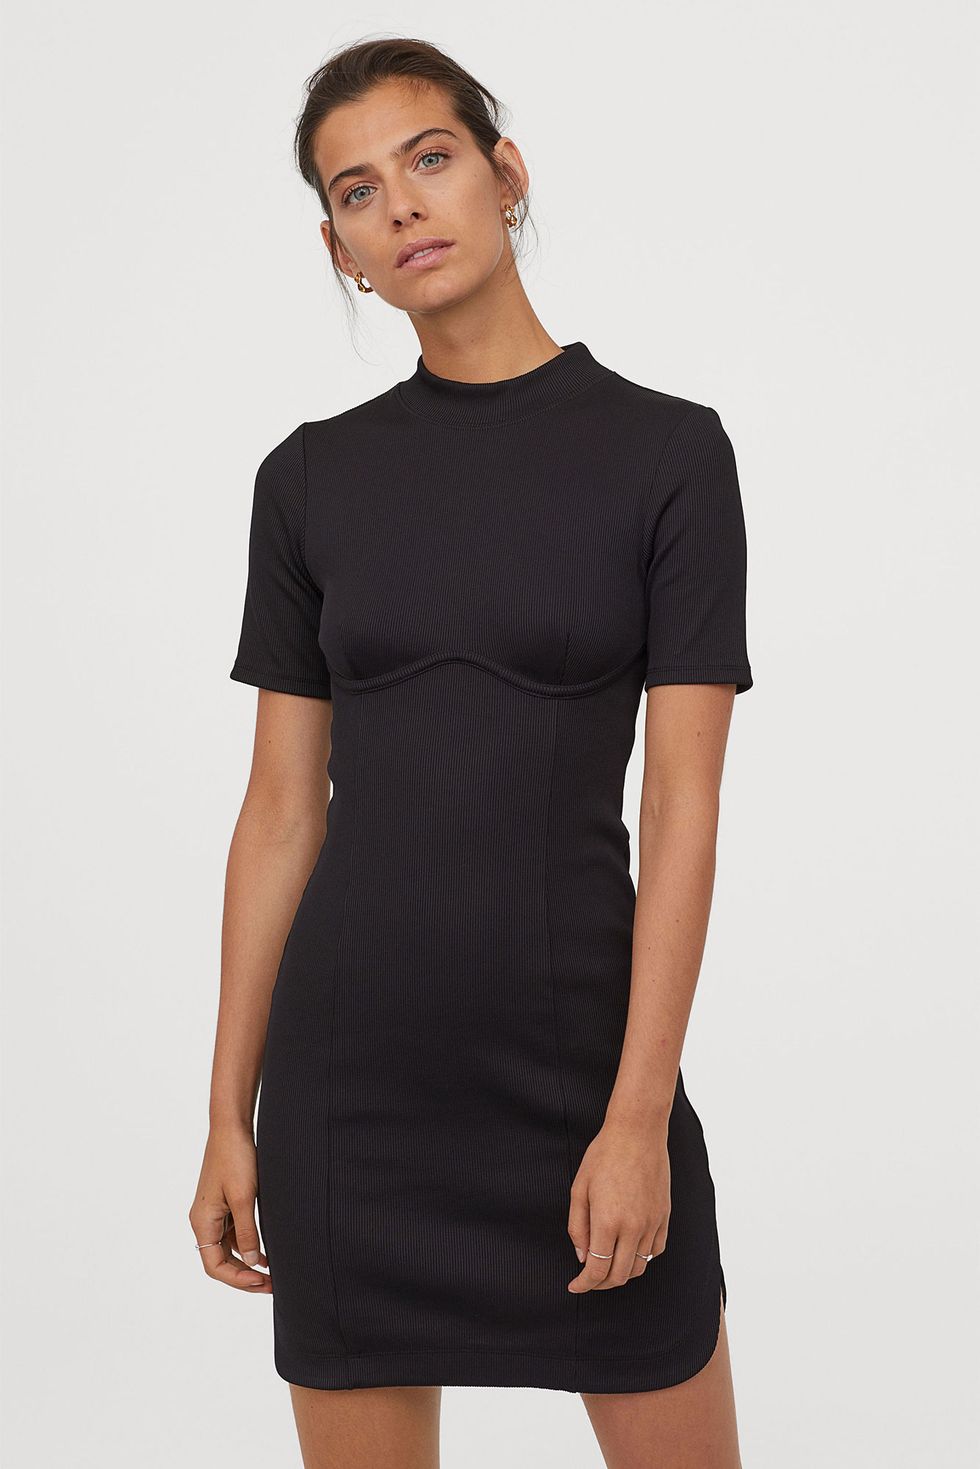 El vestido corto negro de H&M para evitar el pecho caído